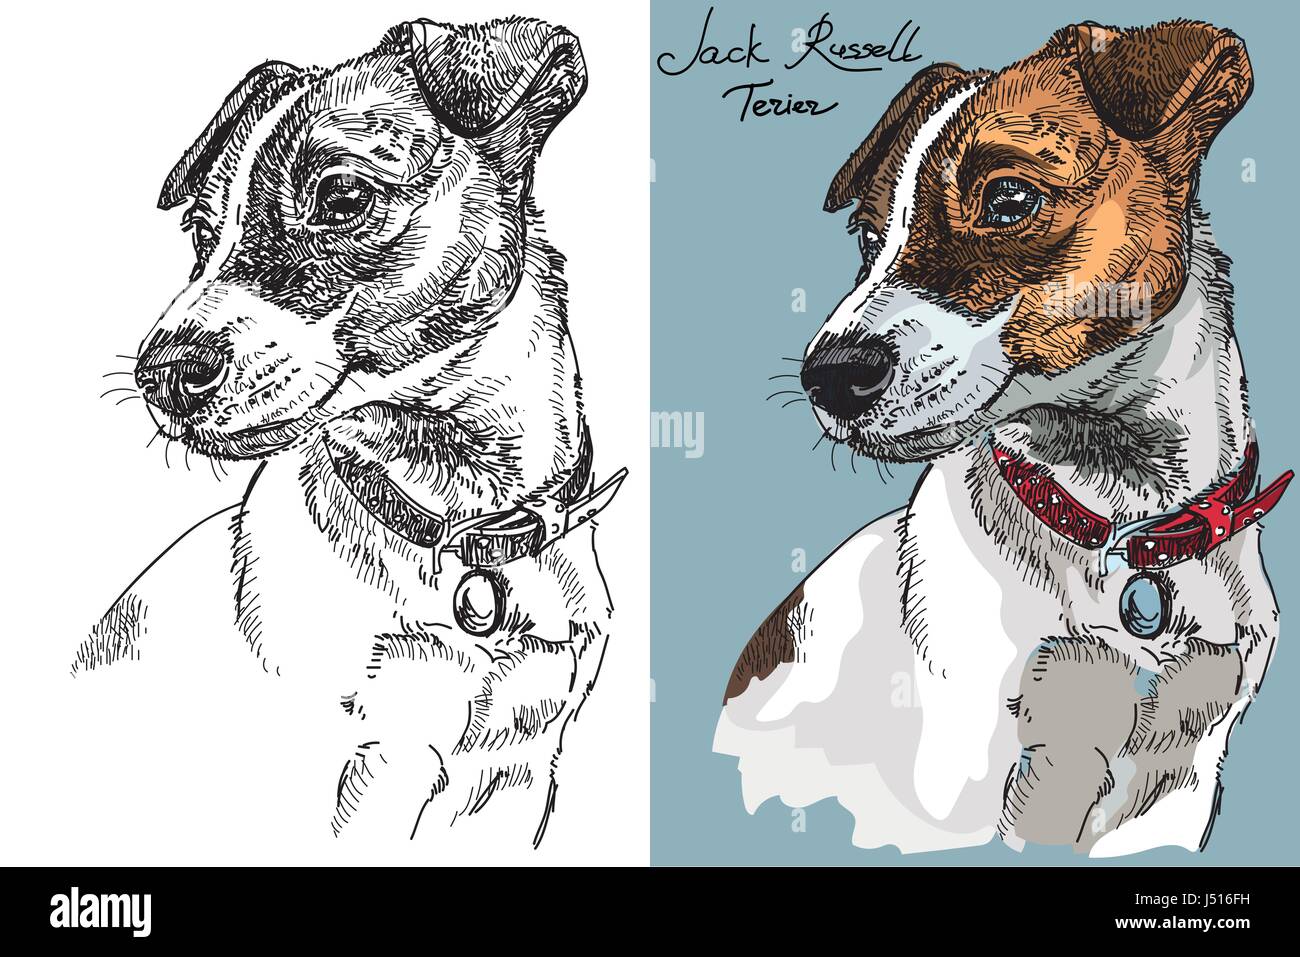 Vektor Jack Russel Terrier in Farbe und Schwarzweiß Handzeichnung Illustration Stock Vektor